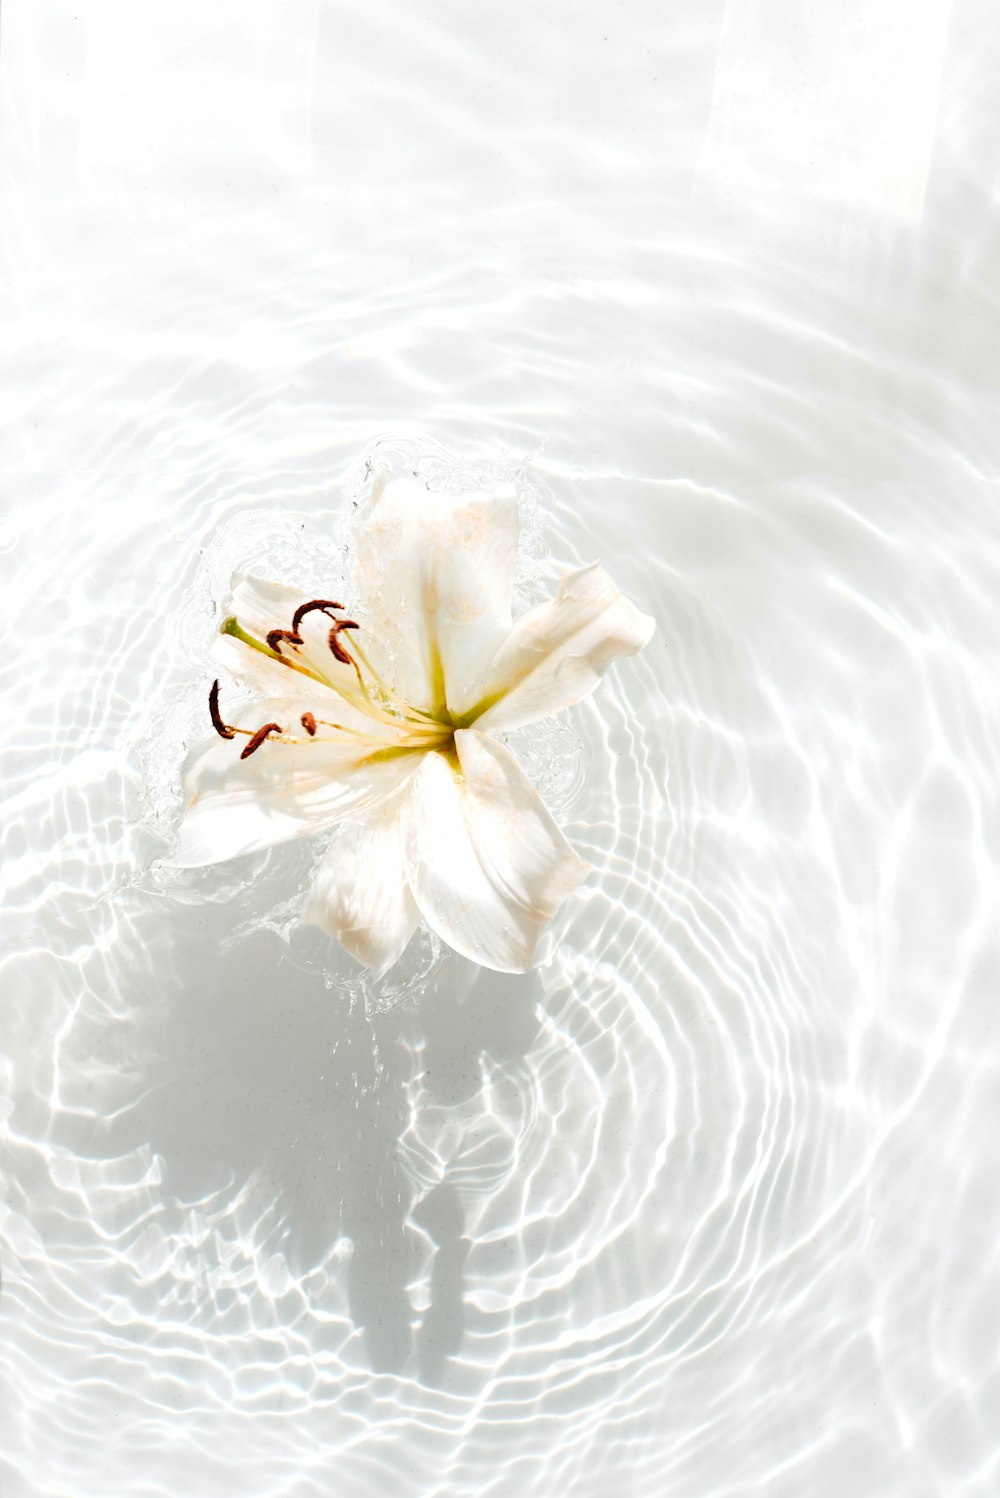 weiße und gelbe Blume auf Wasser